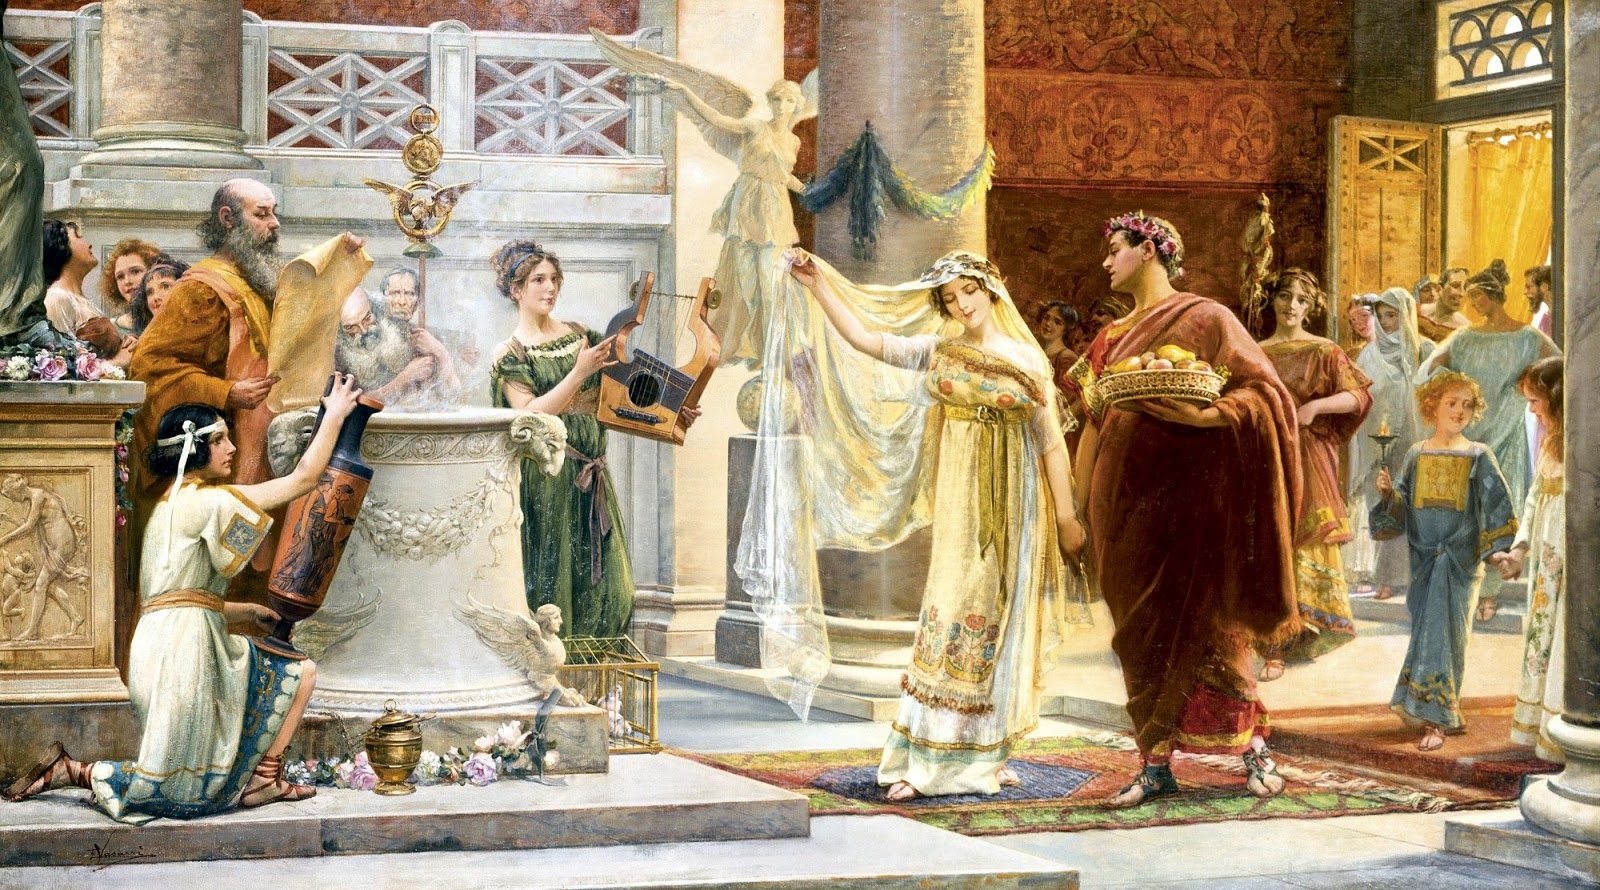 Lienzo de Emilio Vasarri  que  muestra de un modo idealizado una ceremonia de matrimonio romana.